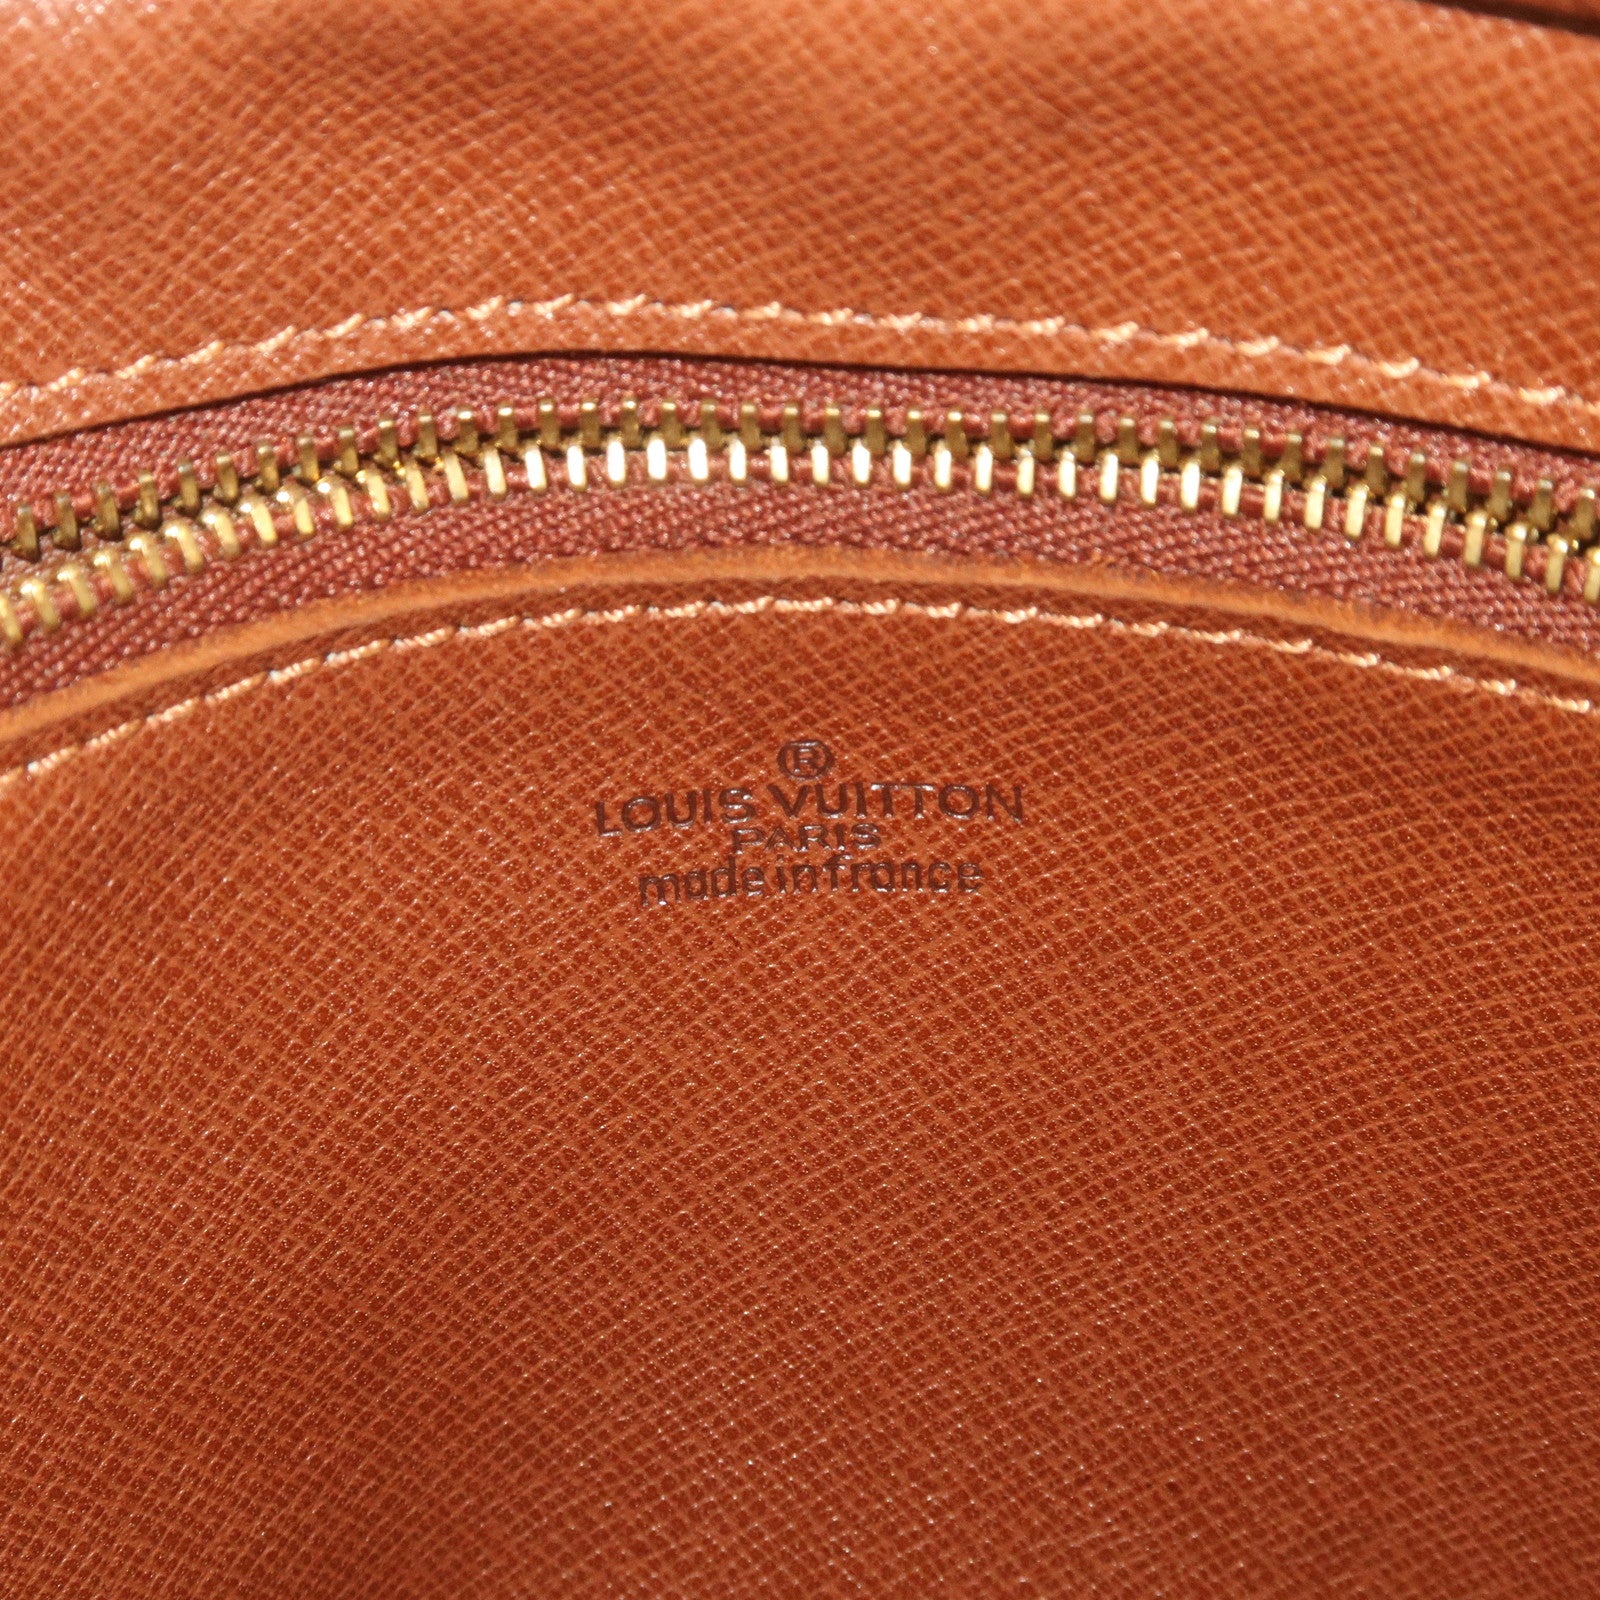 LOUIS VUITTON Jeune Fille PM Shoulder Bag Monogram Leather Brown M51227  04YA643